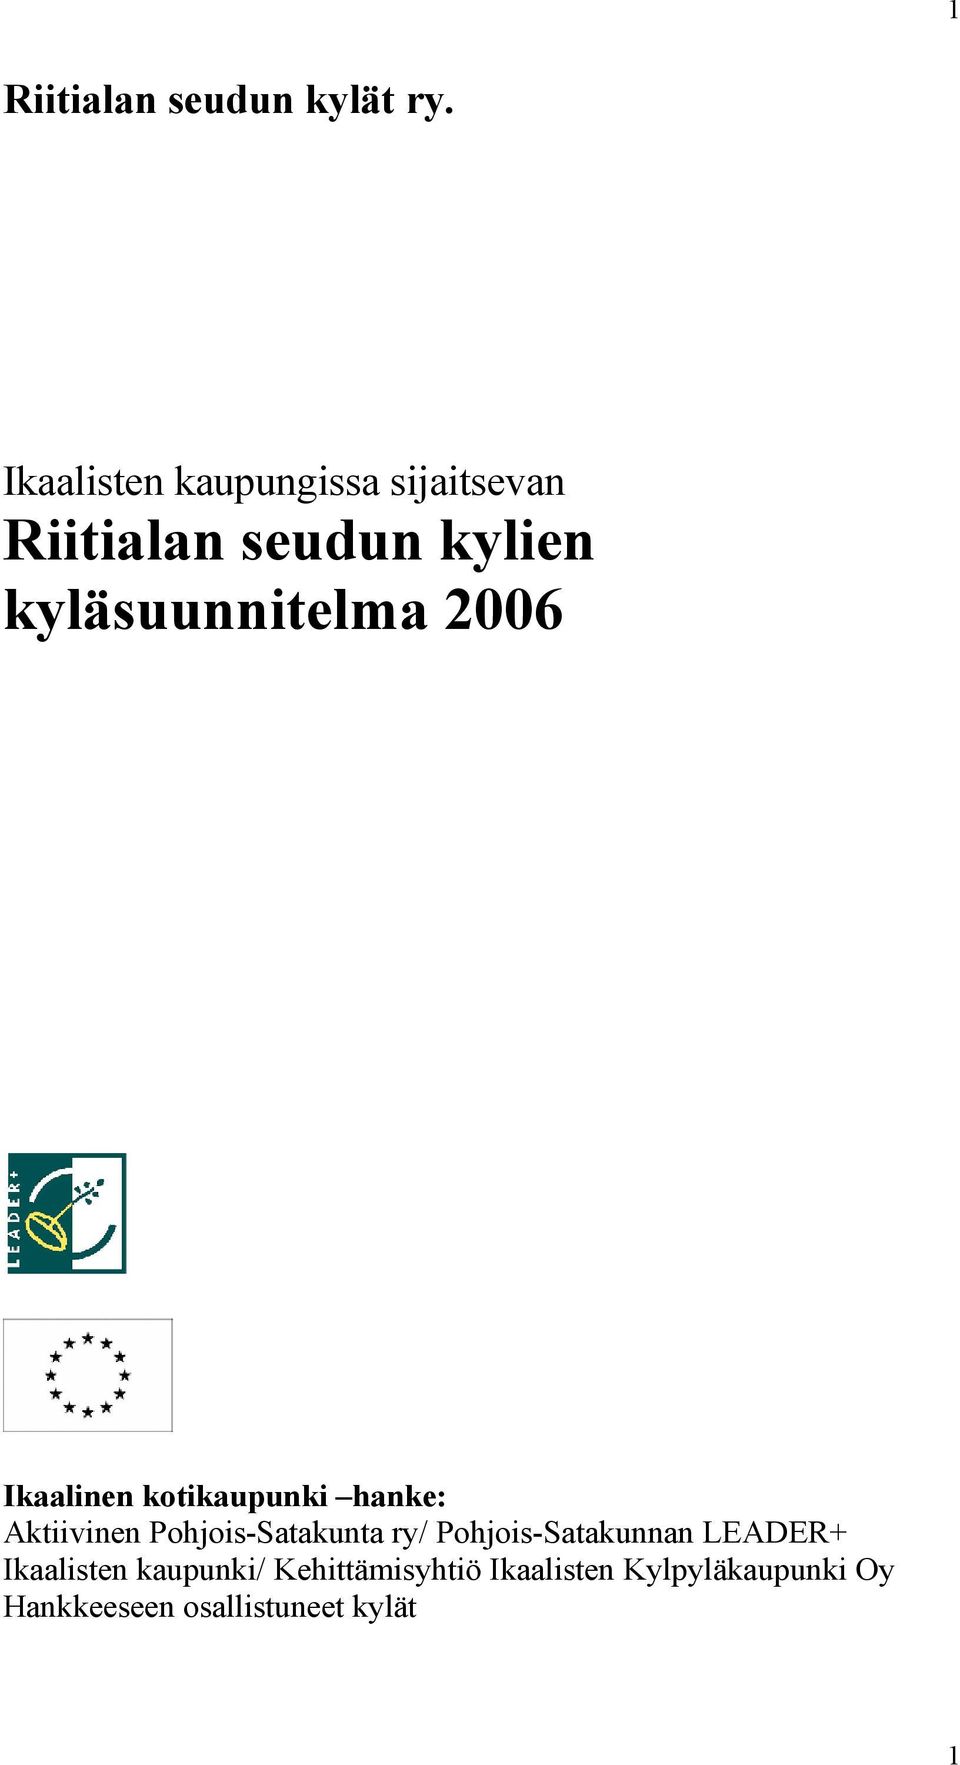 2006 Ikaalinen kotikaupunki hanke: Aktiivinen Pohjois-Satakunta ry/